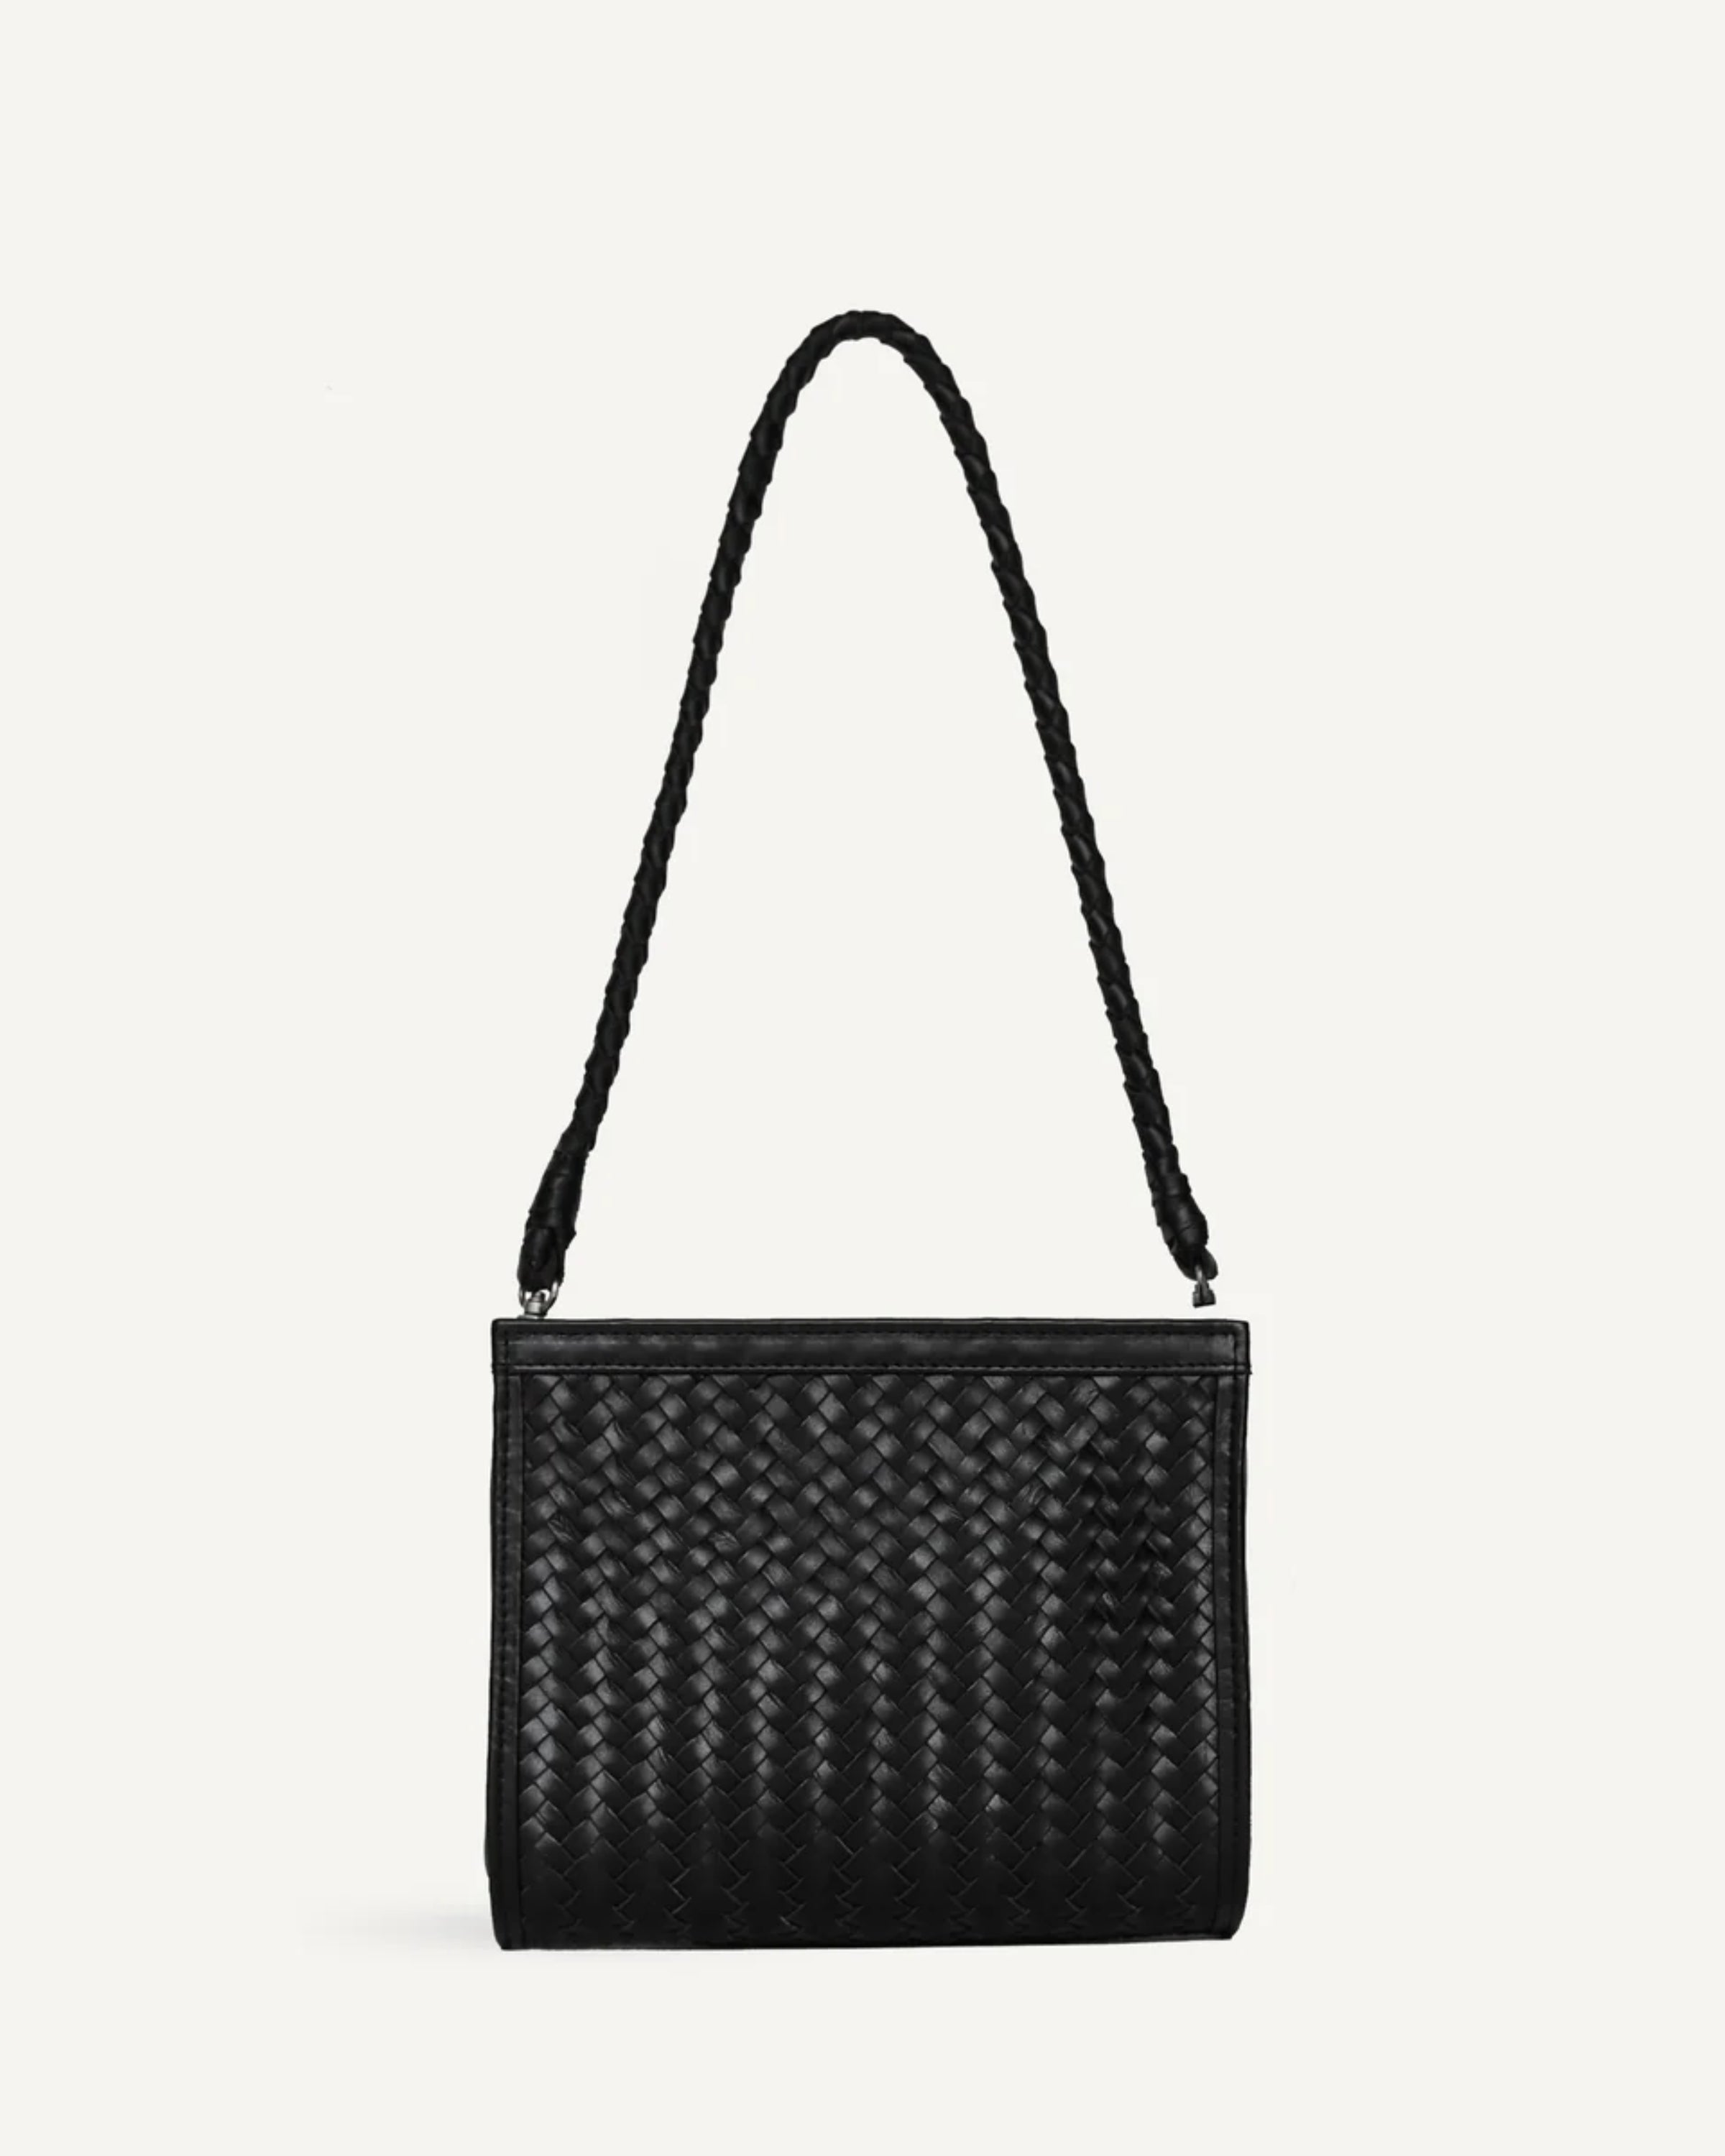 Cece Bag in Black